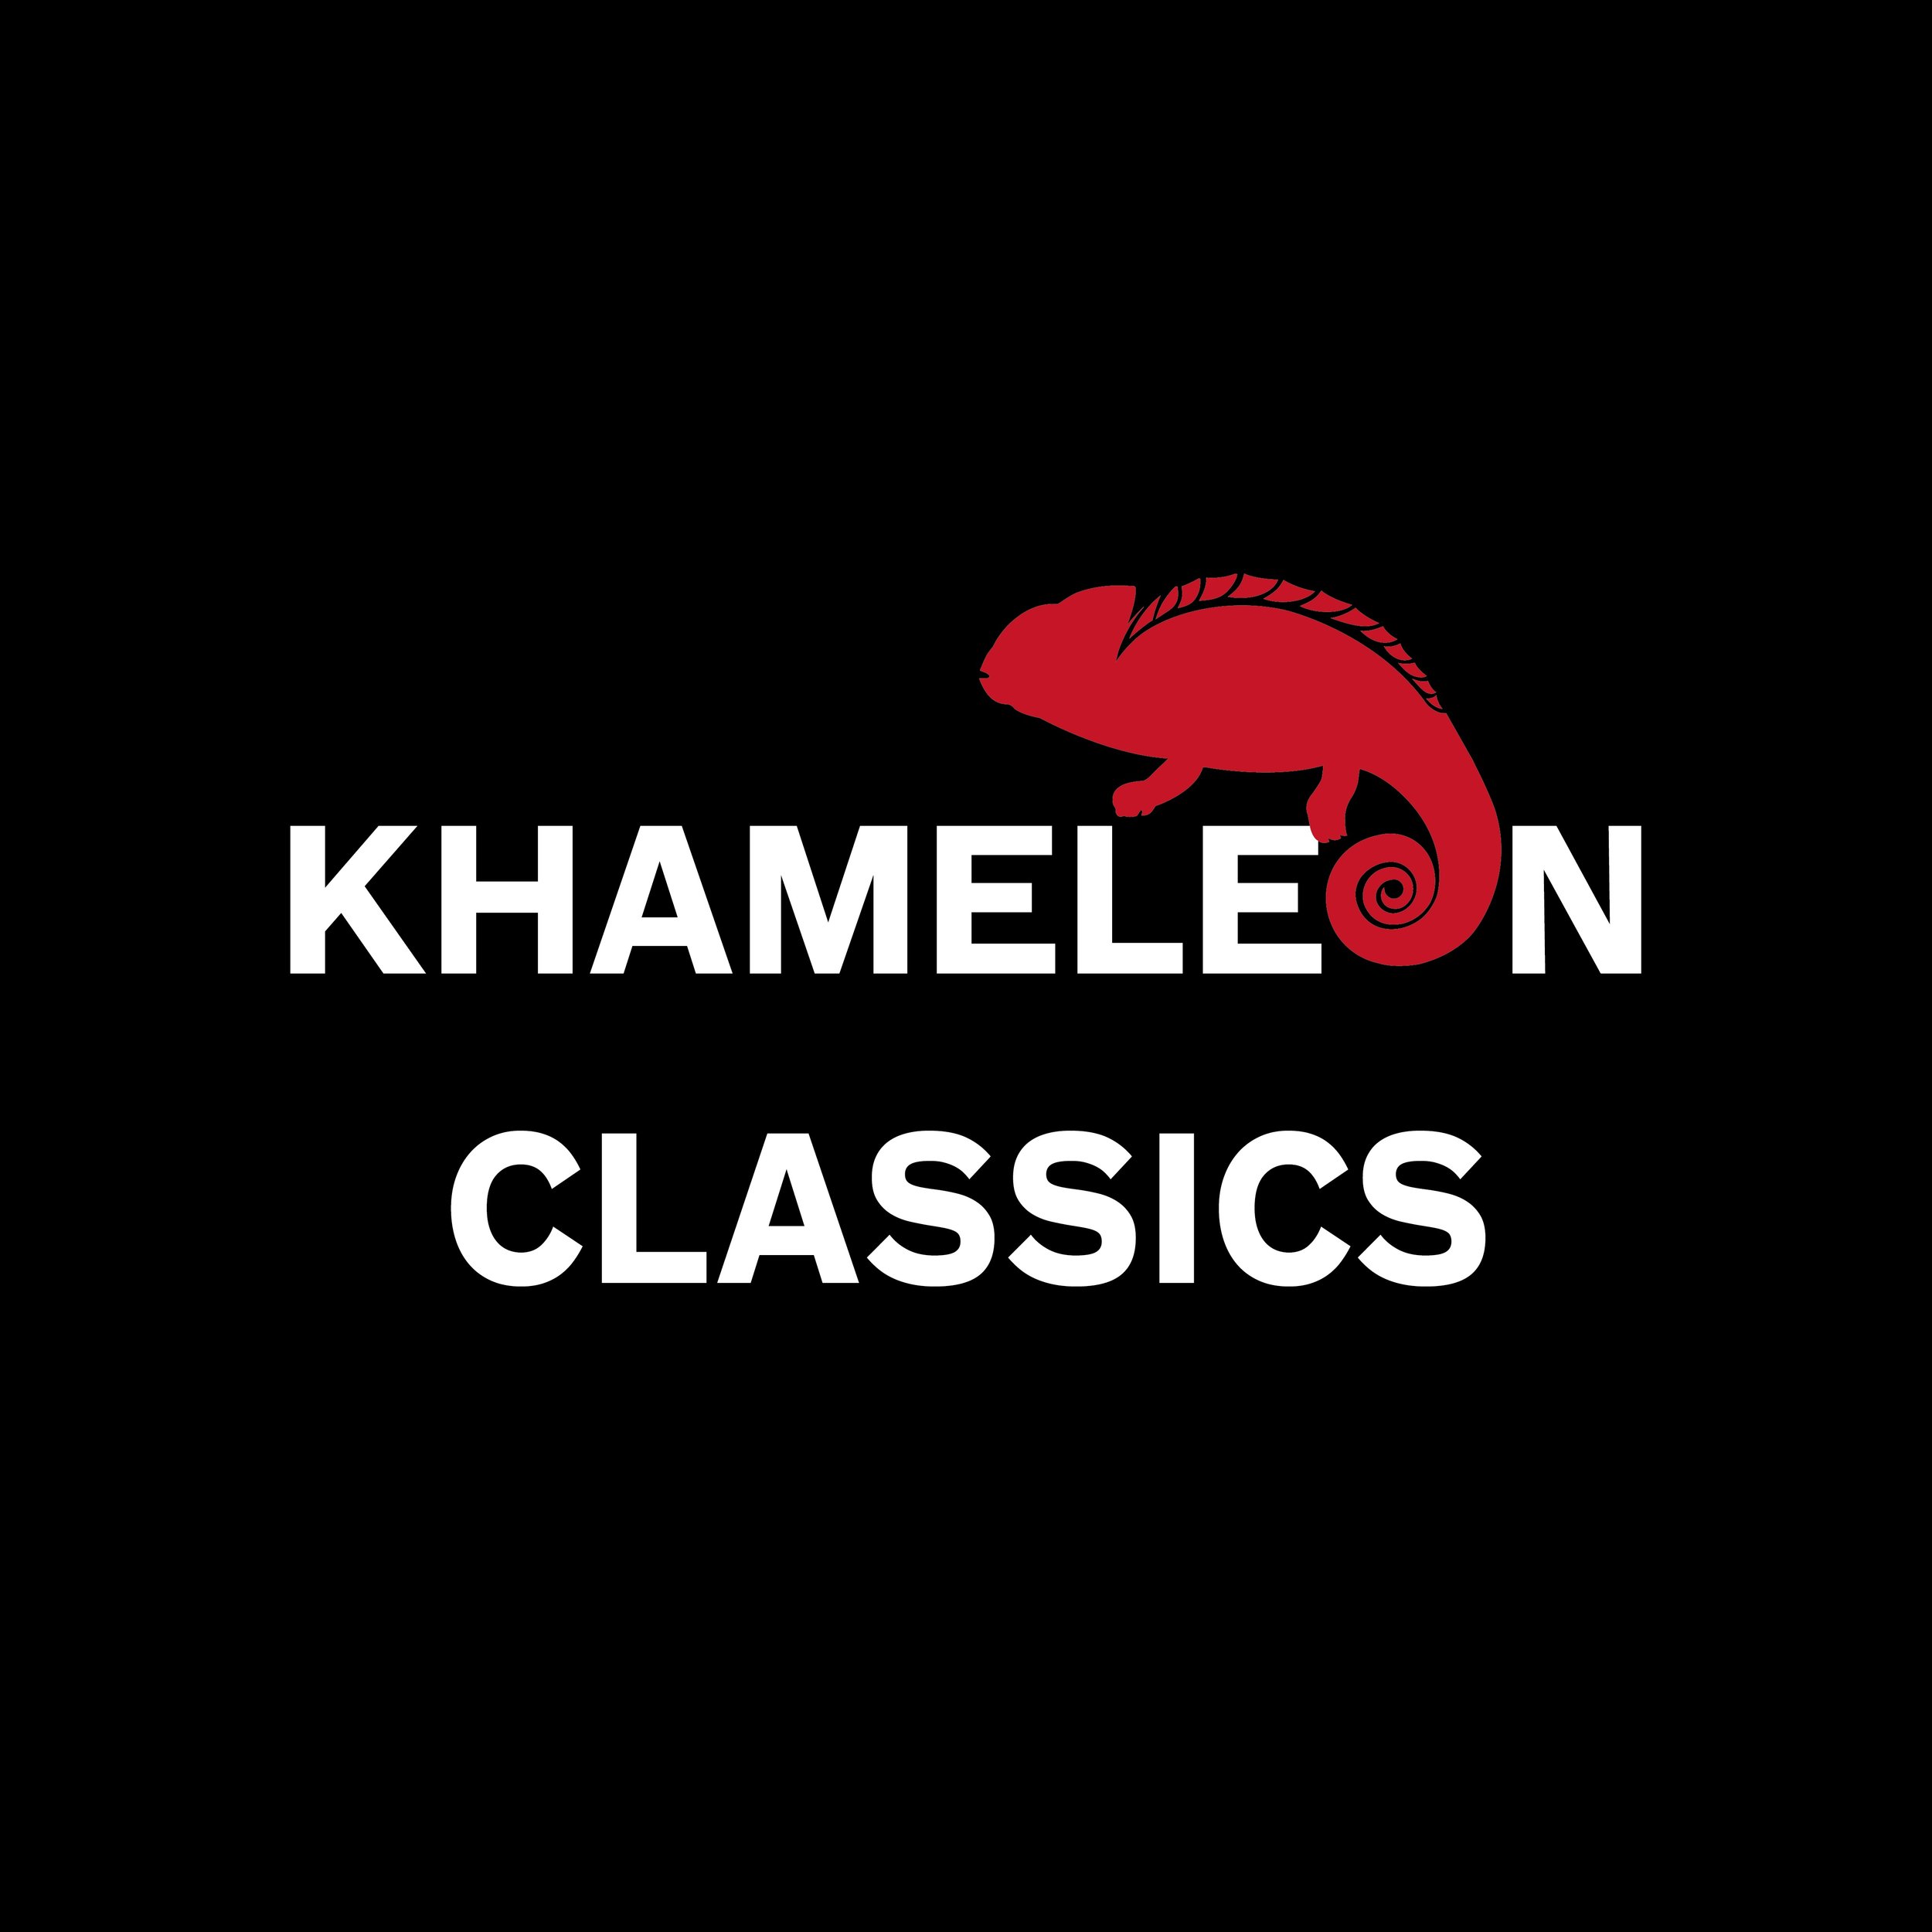 Khameleon Classics logo.jpg